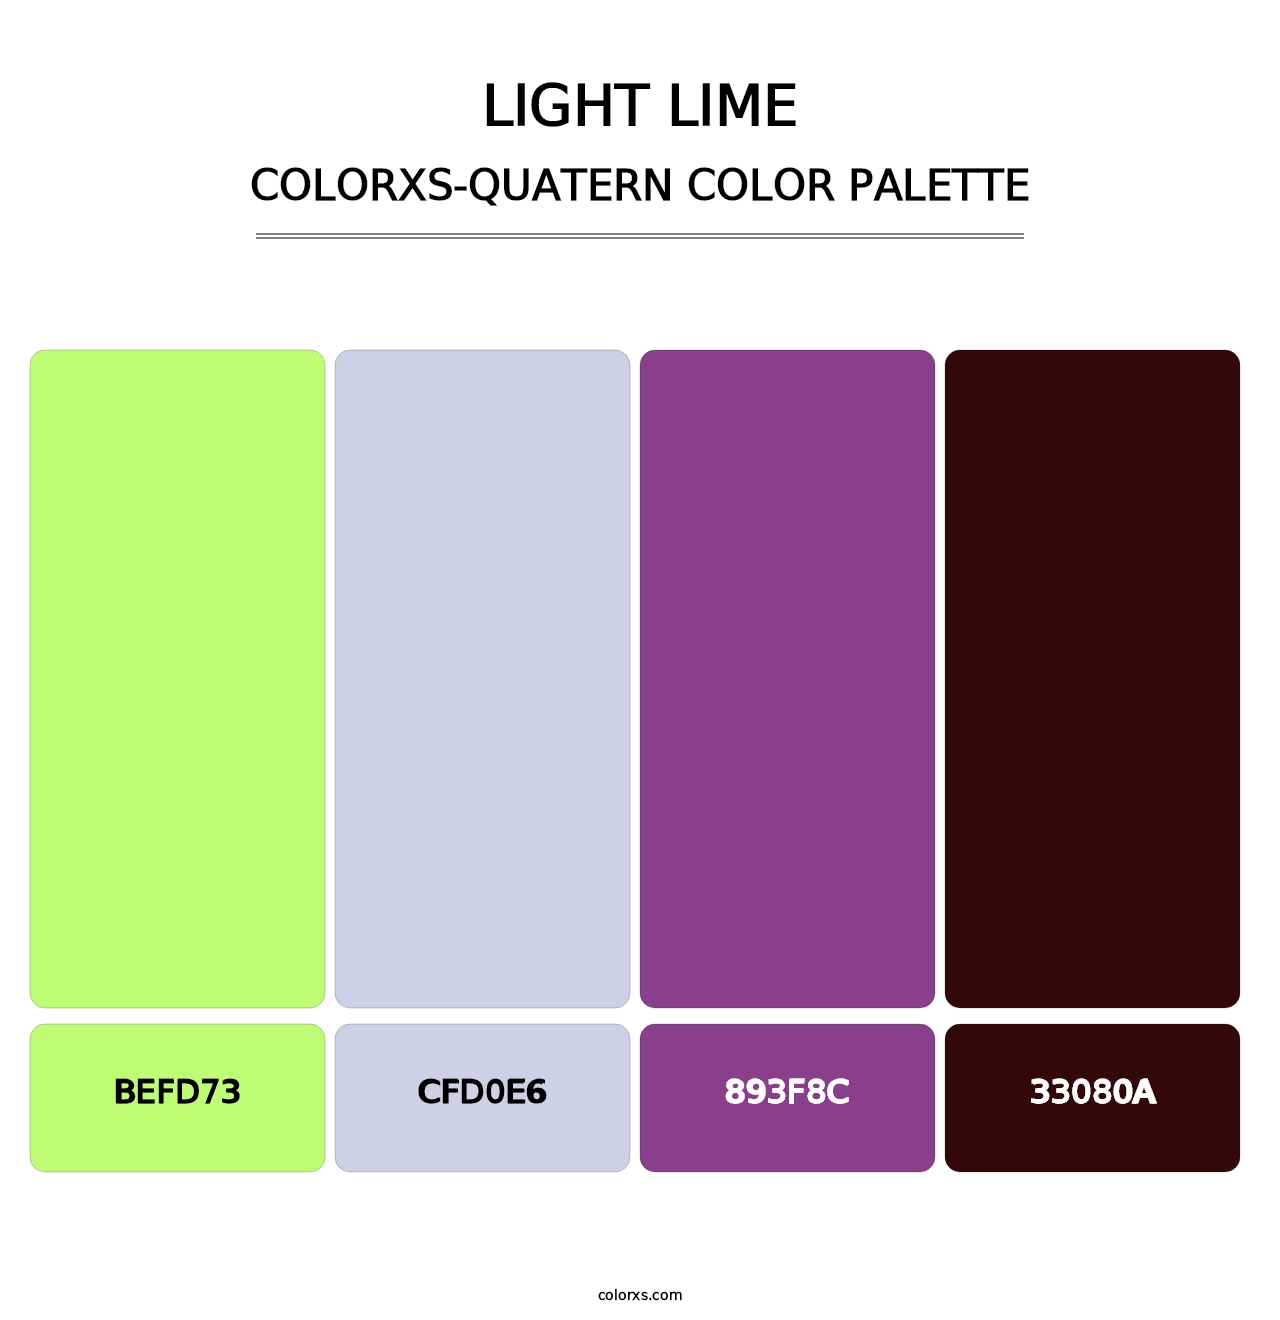 Light Lime - Colorxs Quatern Palette